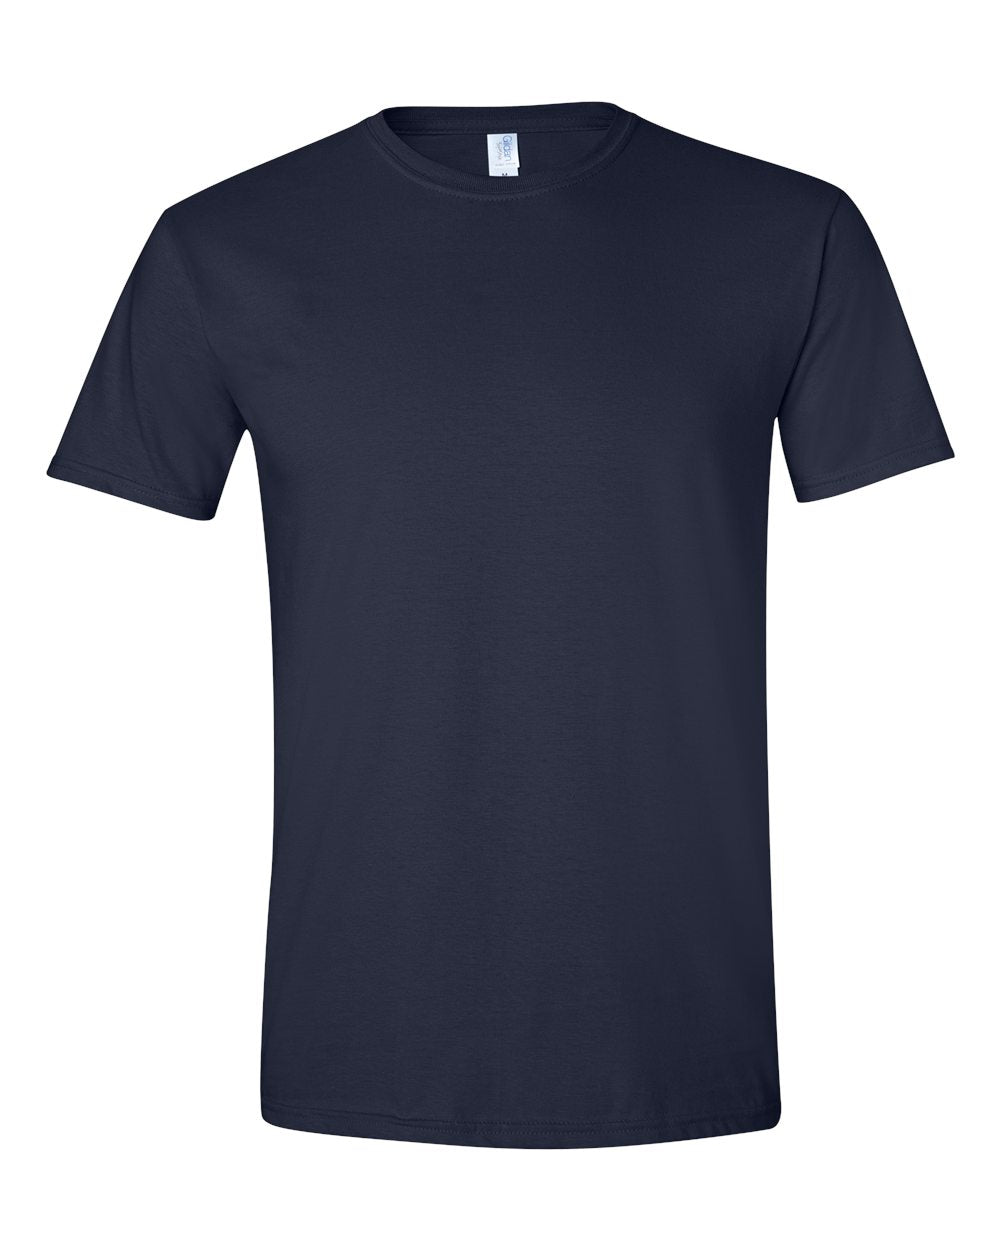 G640 | Adult Unisex Soft style® 4.5 oz. T-Shirt